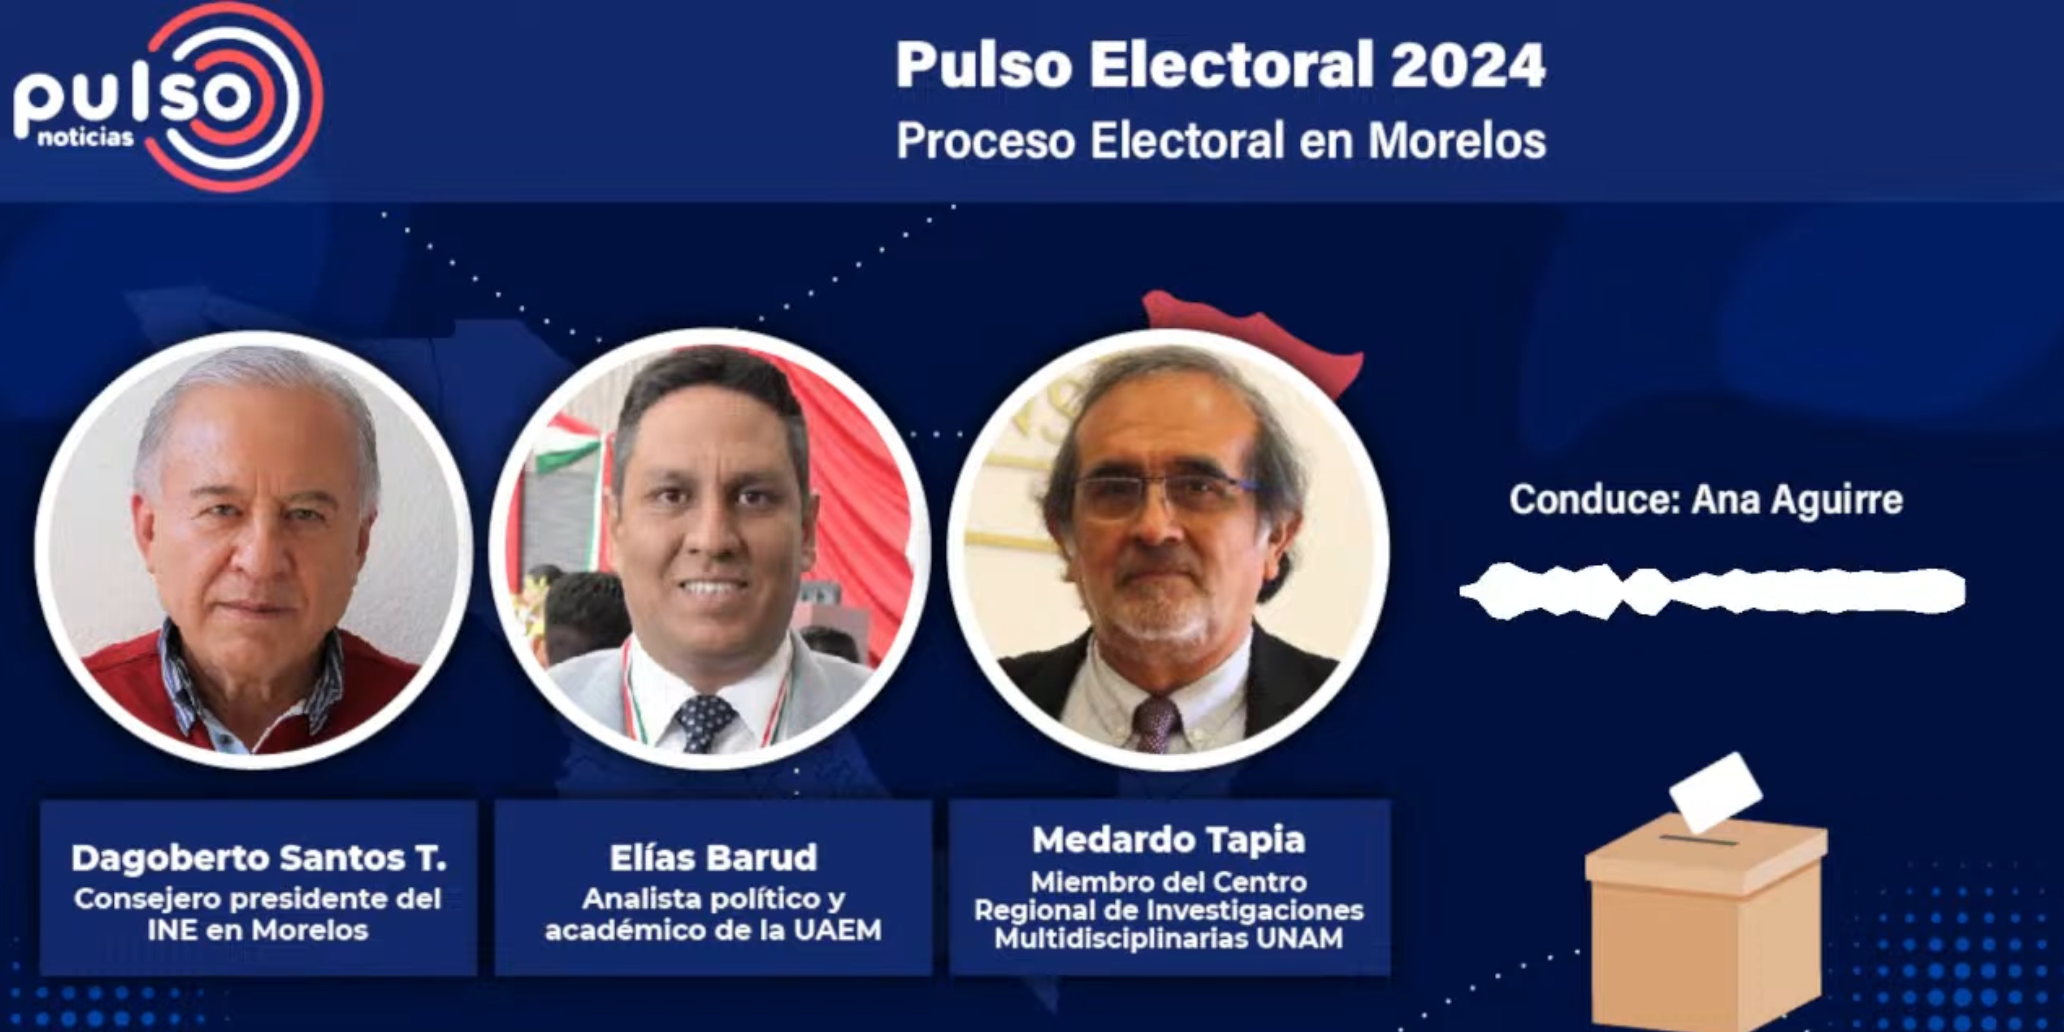 Pulso Electoral 2024: Electoral Process in Morelos.